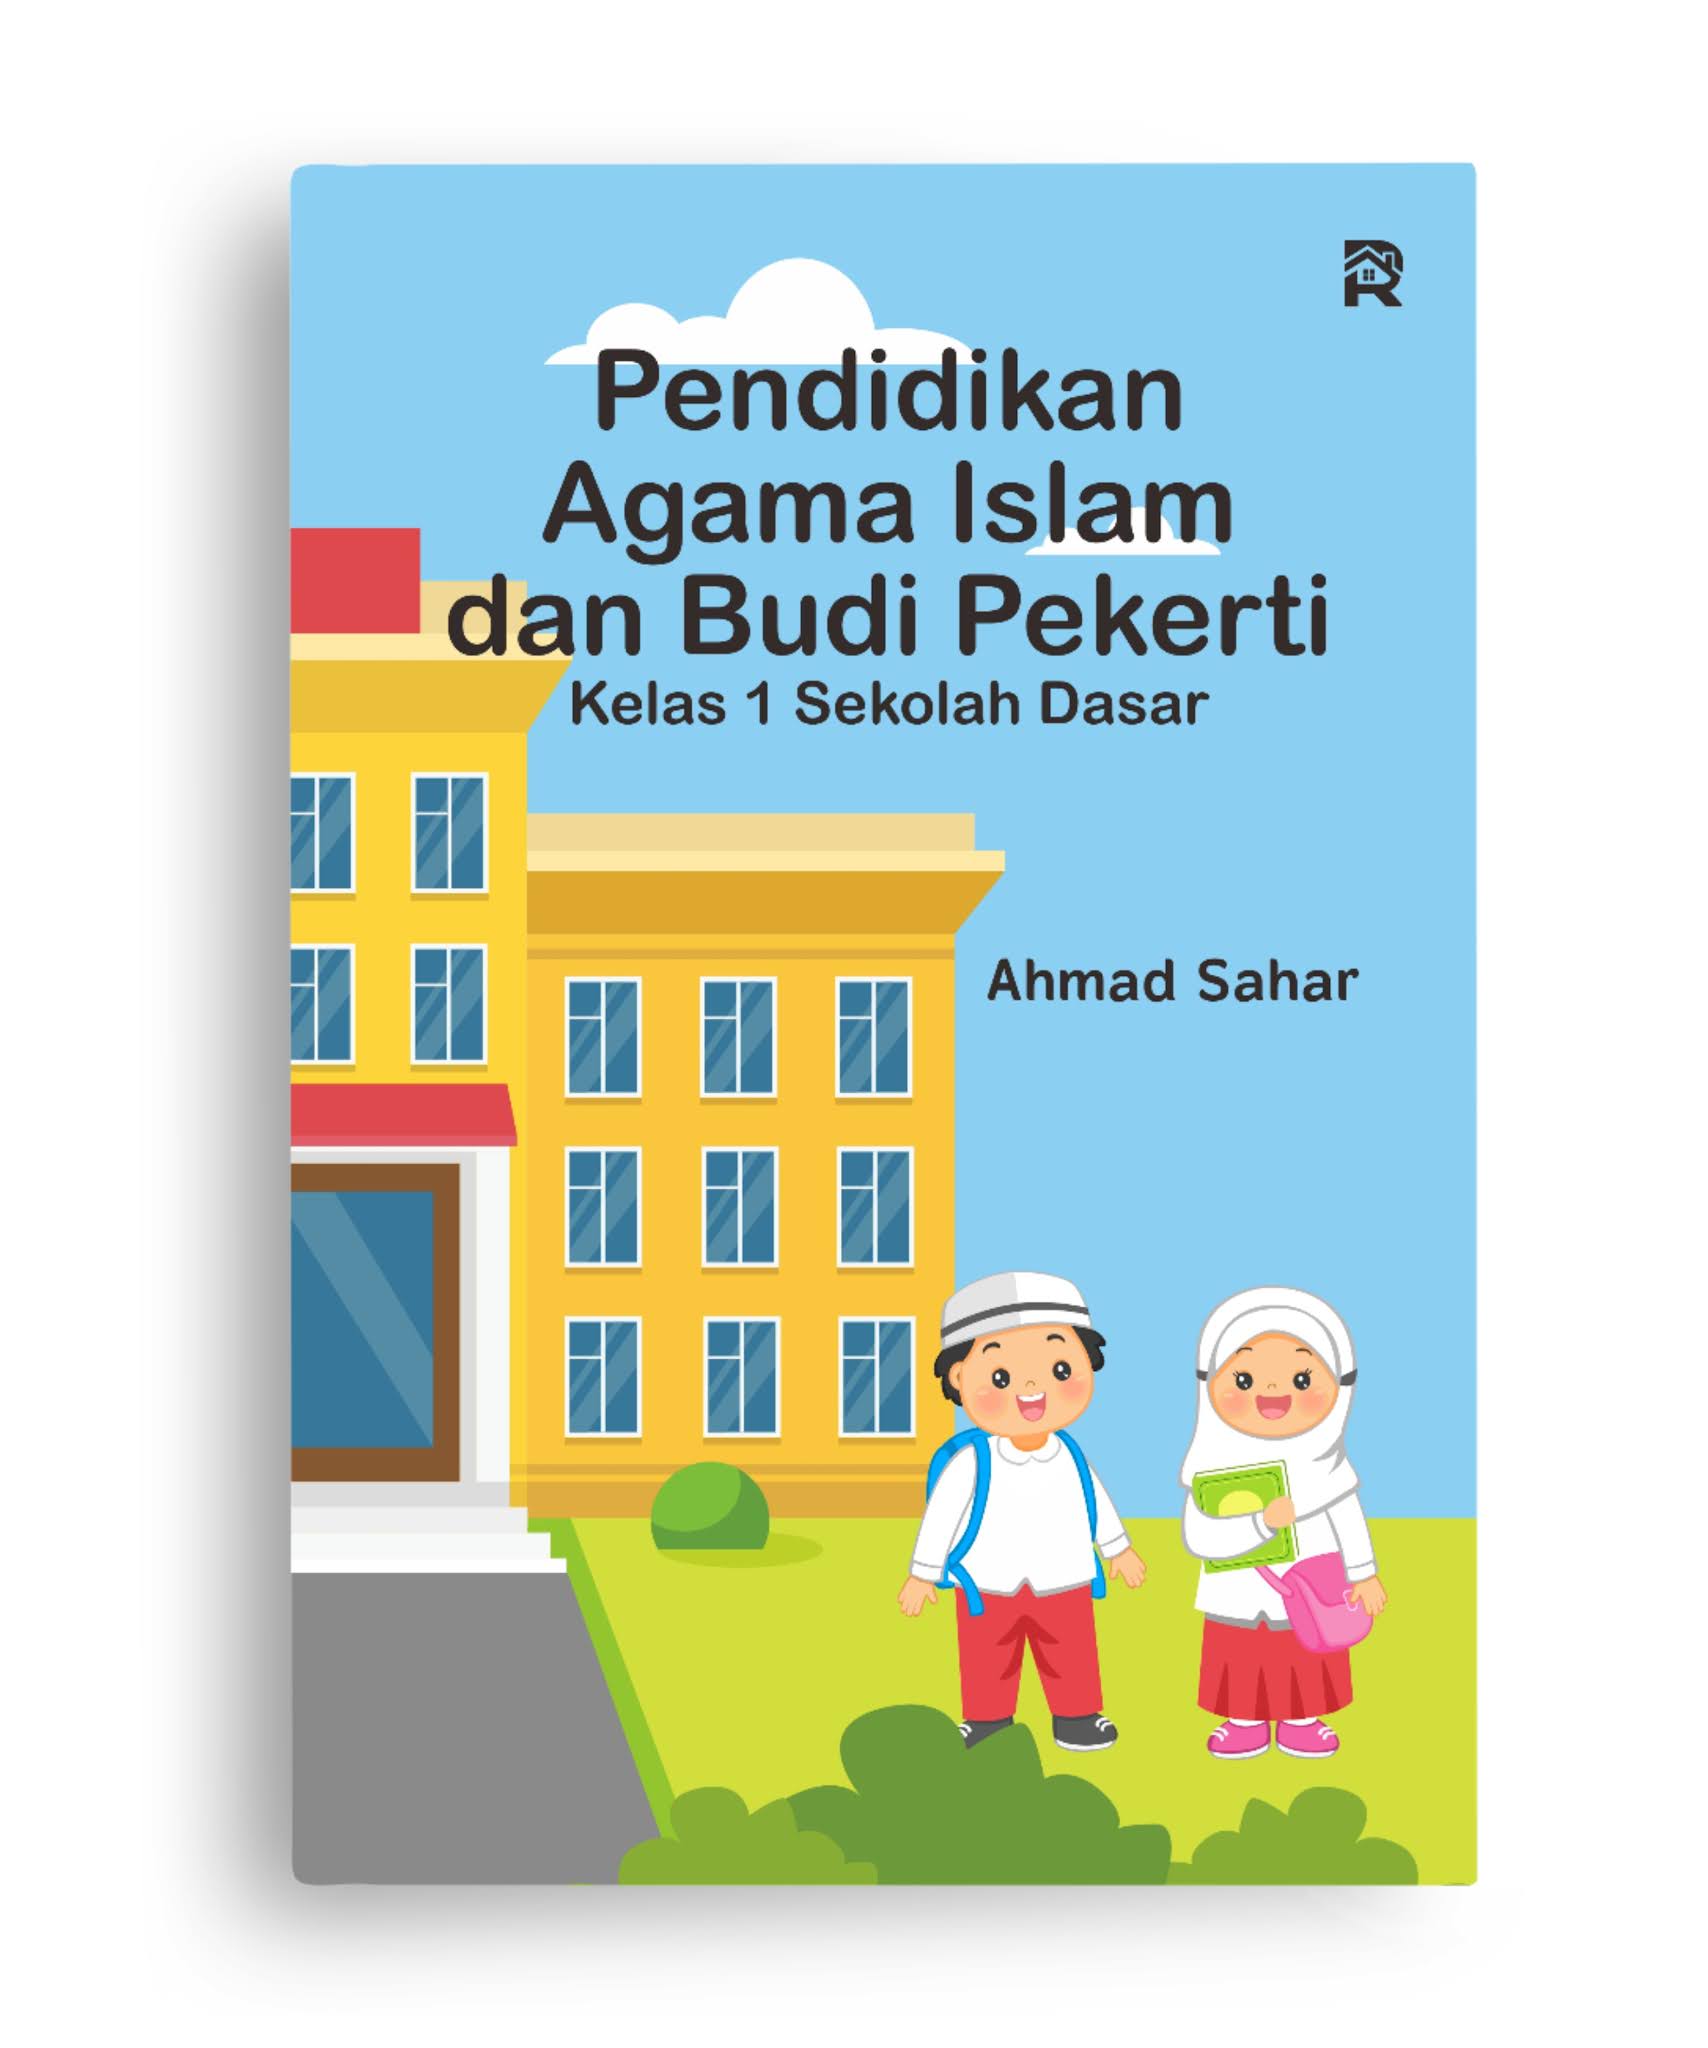 Pendidikan Agama Islam dan Budi Pekerti Kelas 1 Sekolah Dasar